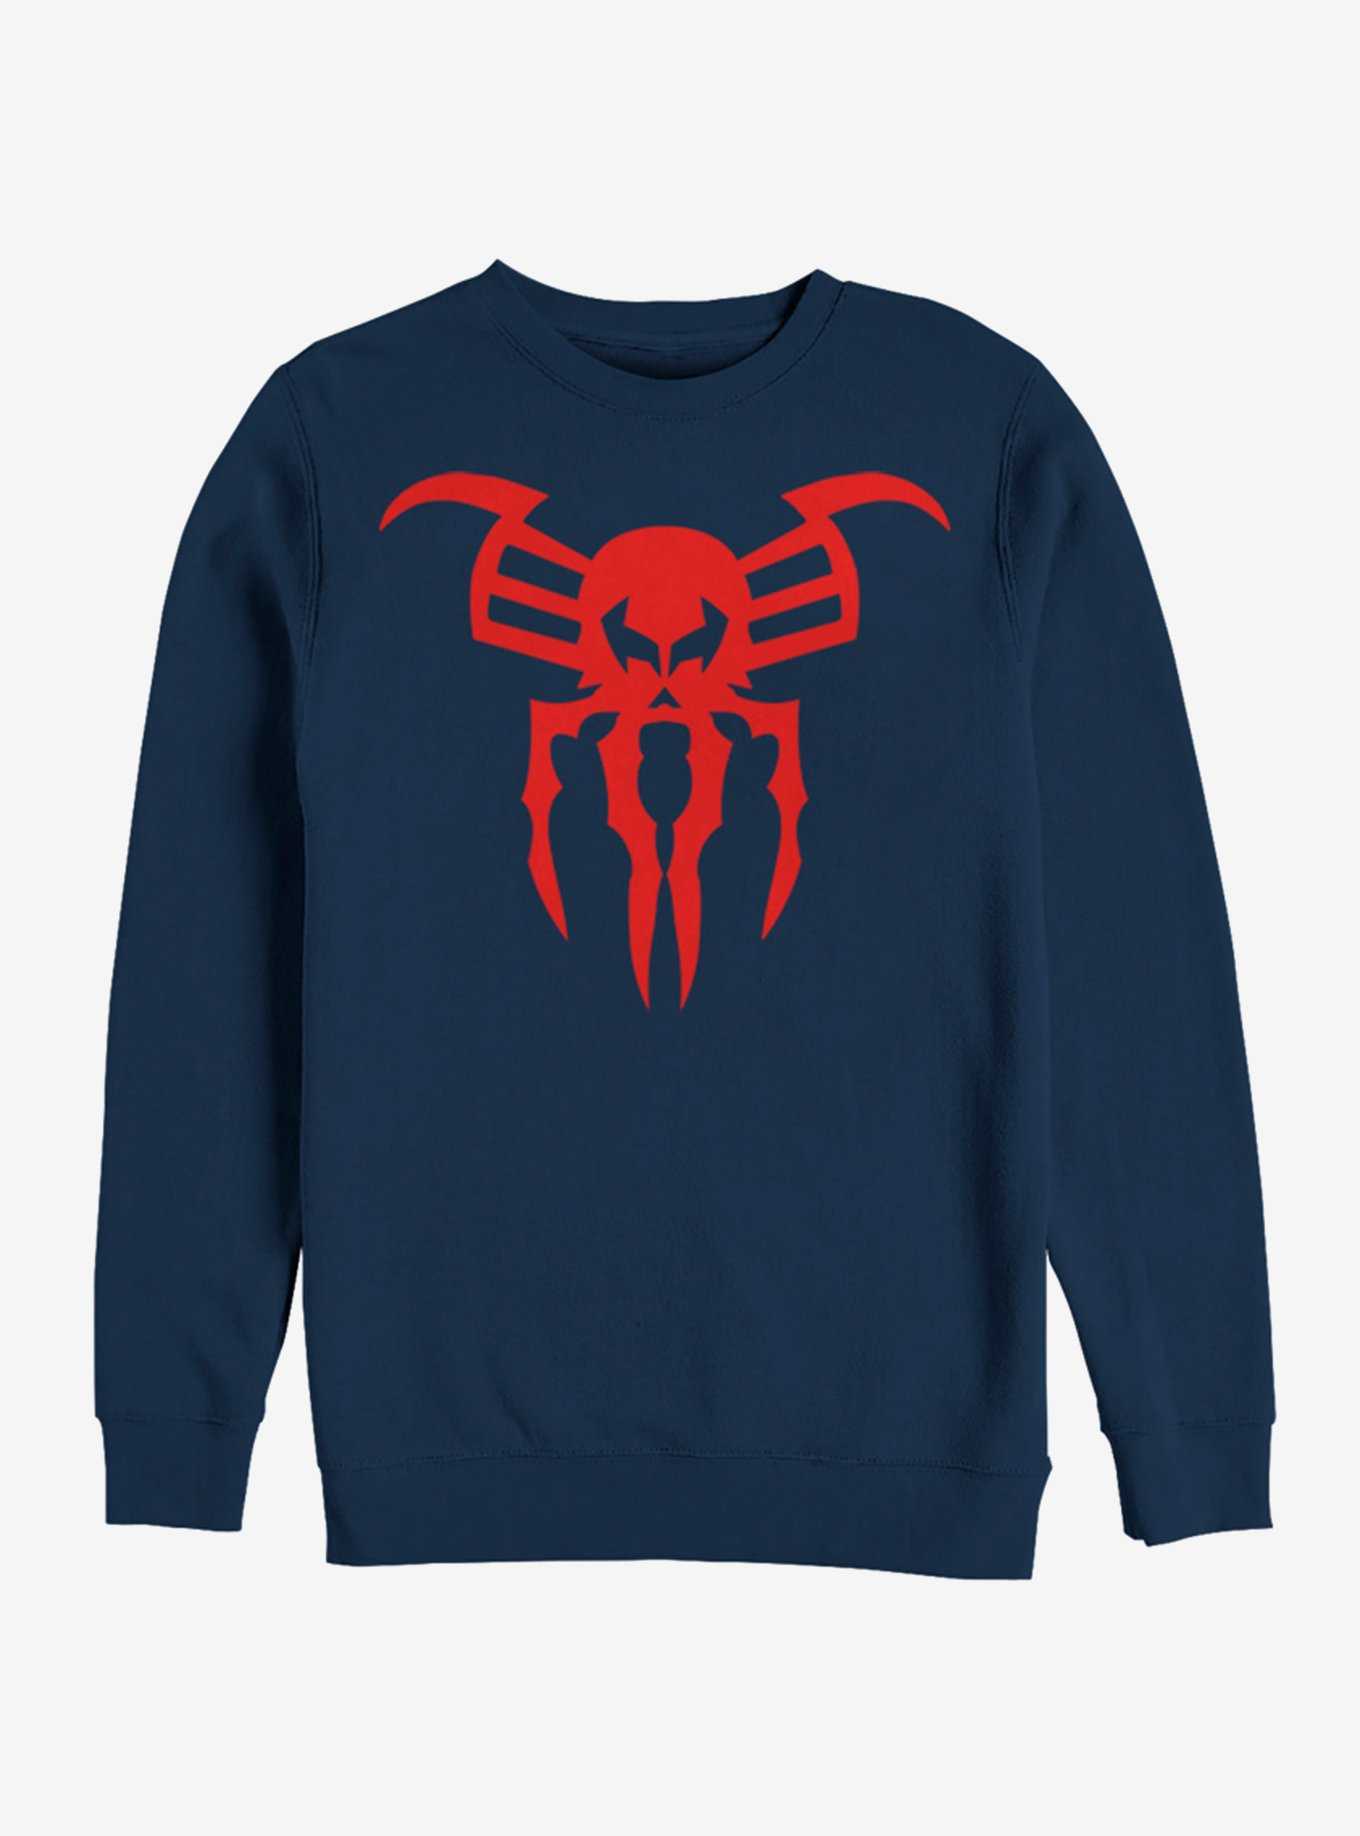 Marvel Spider-Man Spider-Man 2099 Icon Sweatshirt, , hi-res